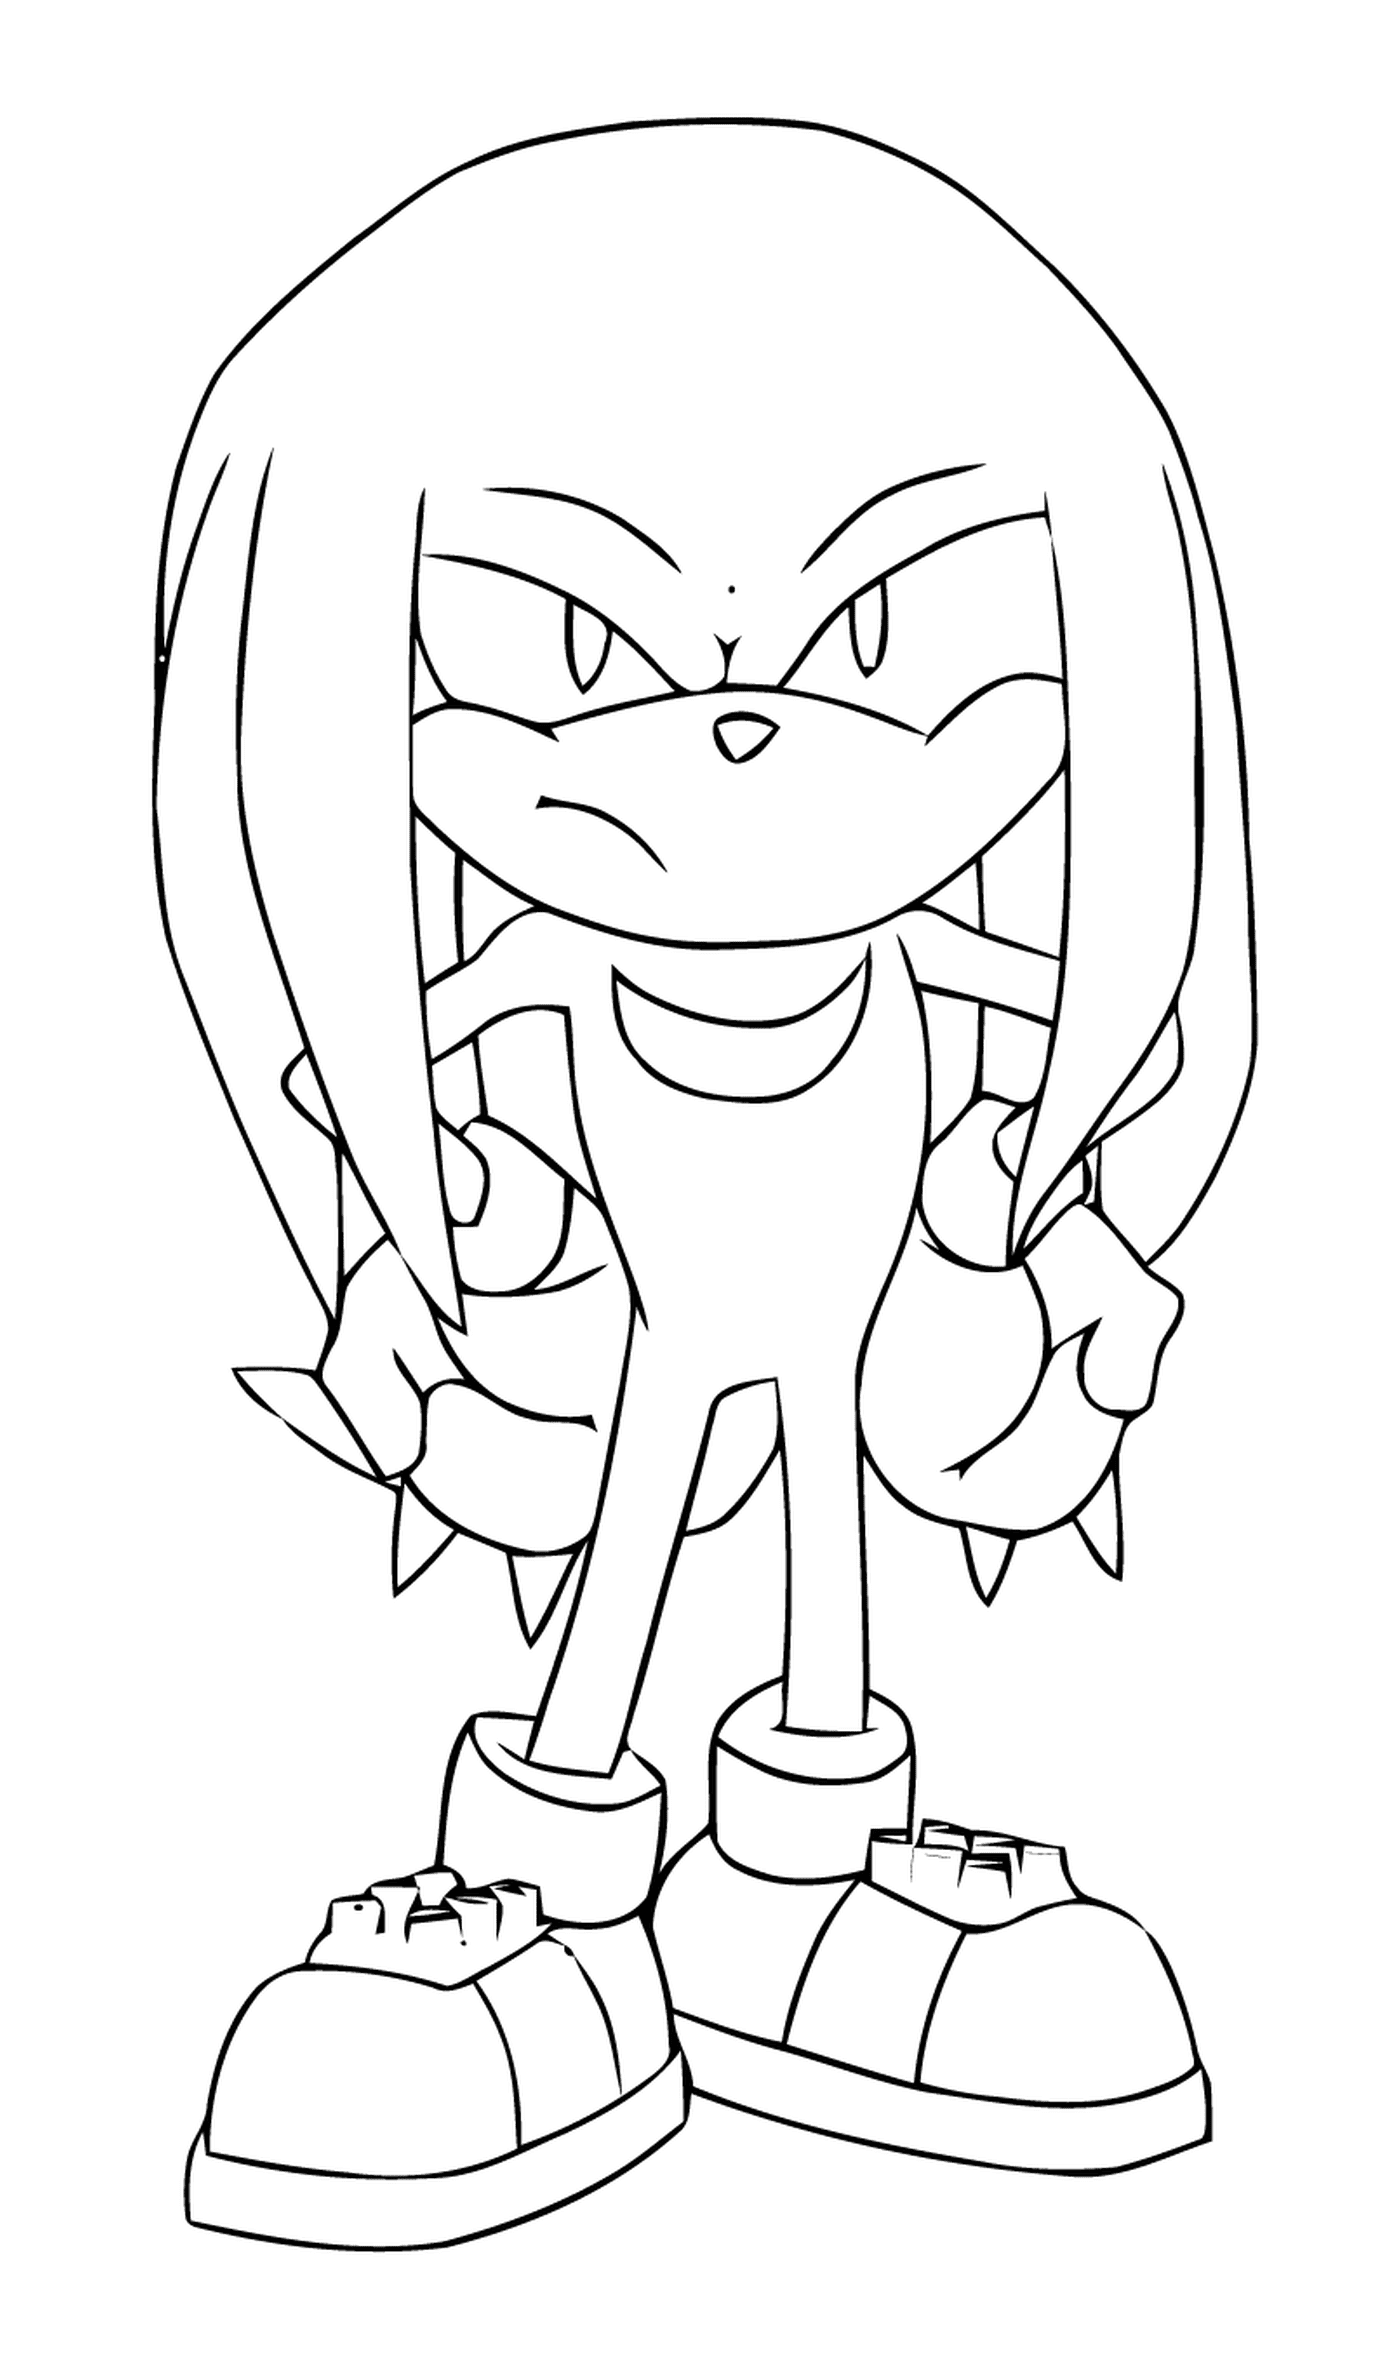  Sonic mit einem bestimmten Ausdruck 